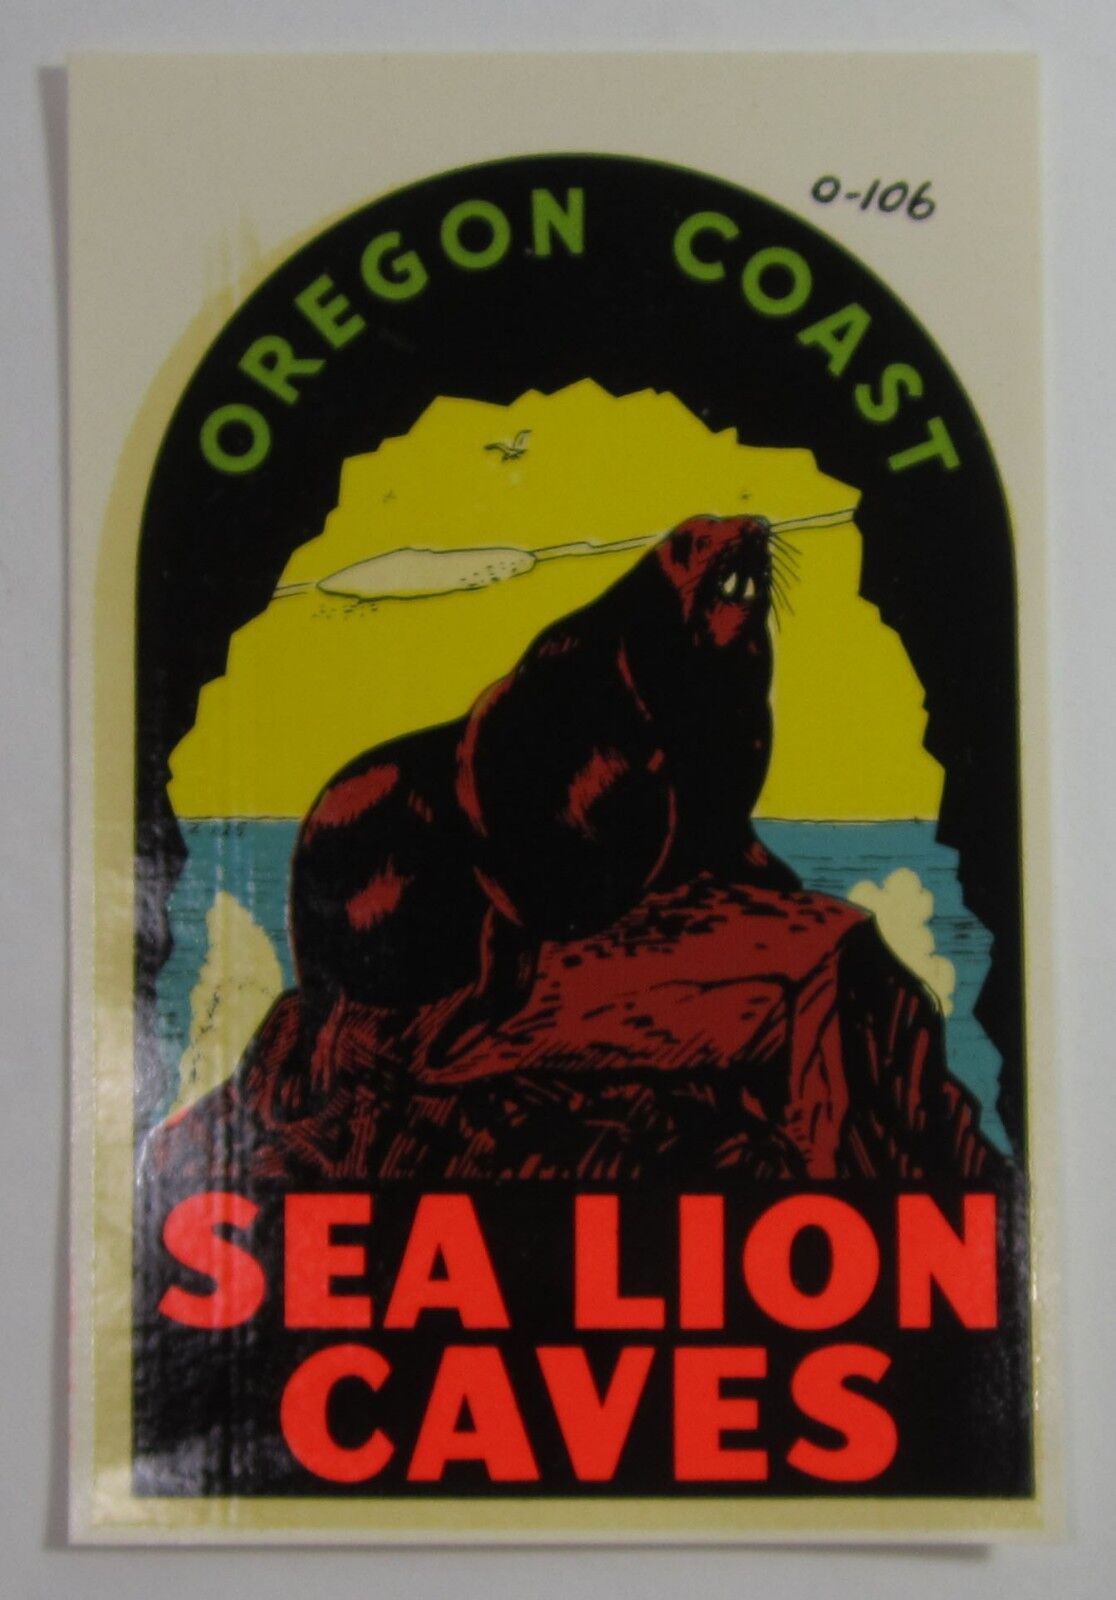 Vtg Automobile Travel Decal Sea Lion Caves OR Coast Lindgren Turner Original Env